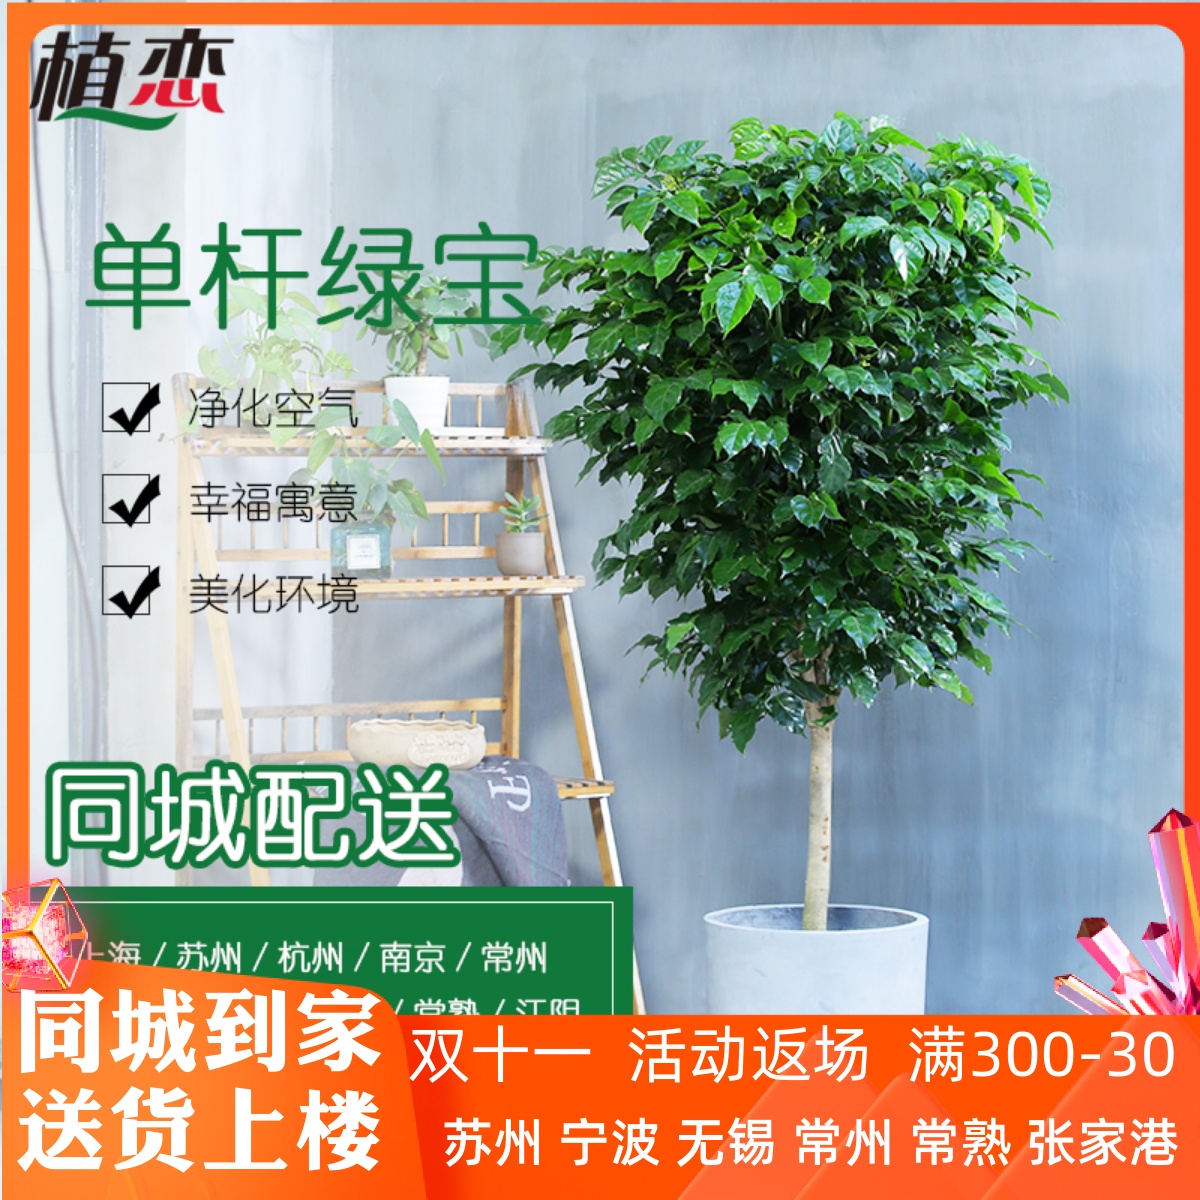 绿宝幸福树盆栽室内植物客厅大型绿植盆景开业送礼苏州上海配送